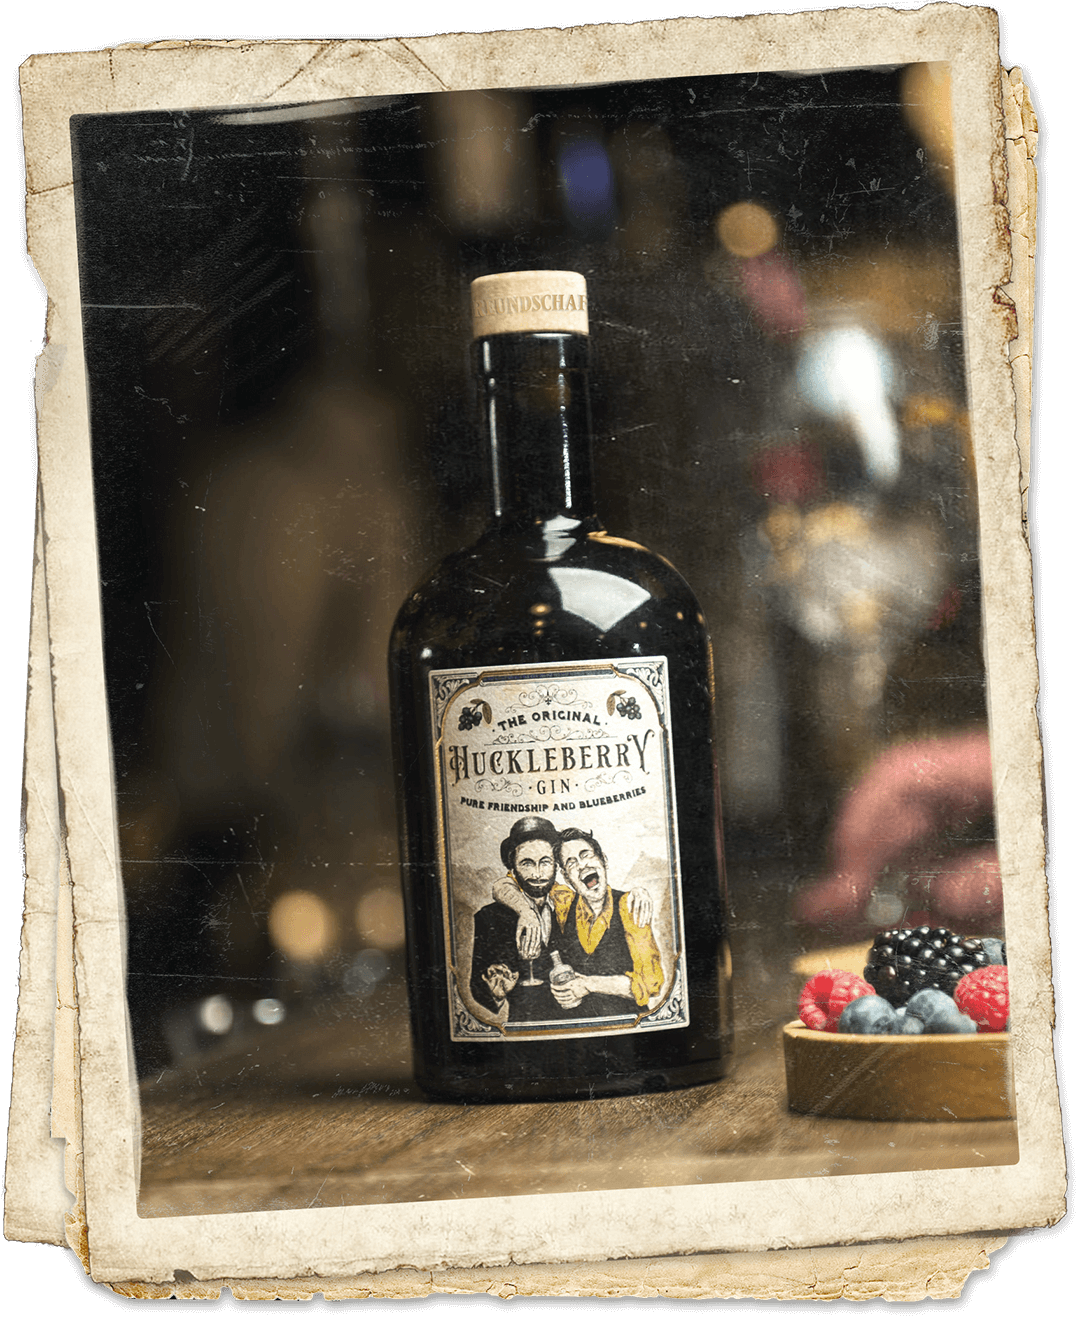 Huckleberry Gin Flasche Vintage Foto